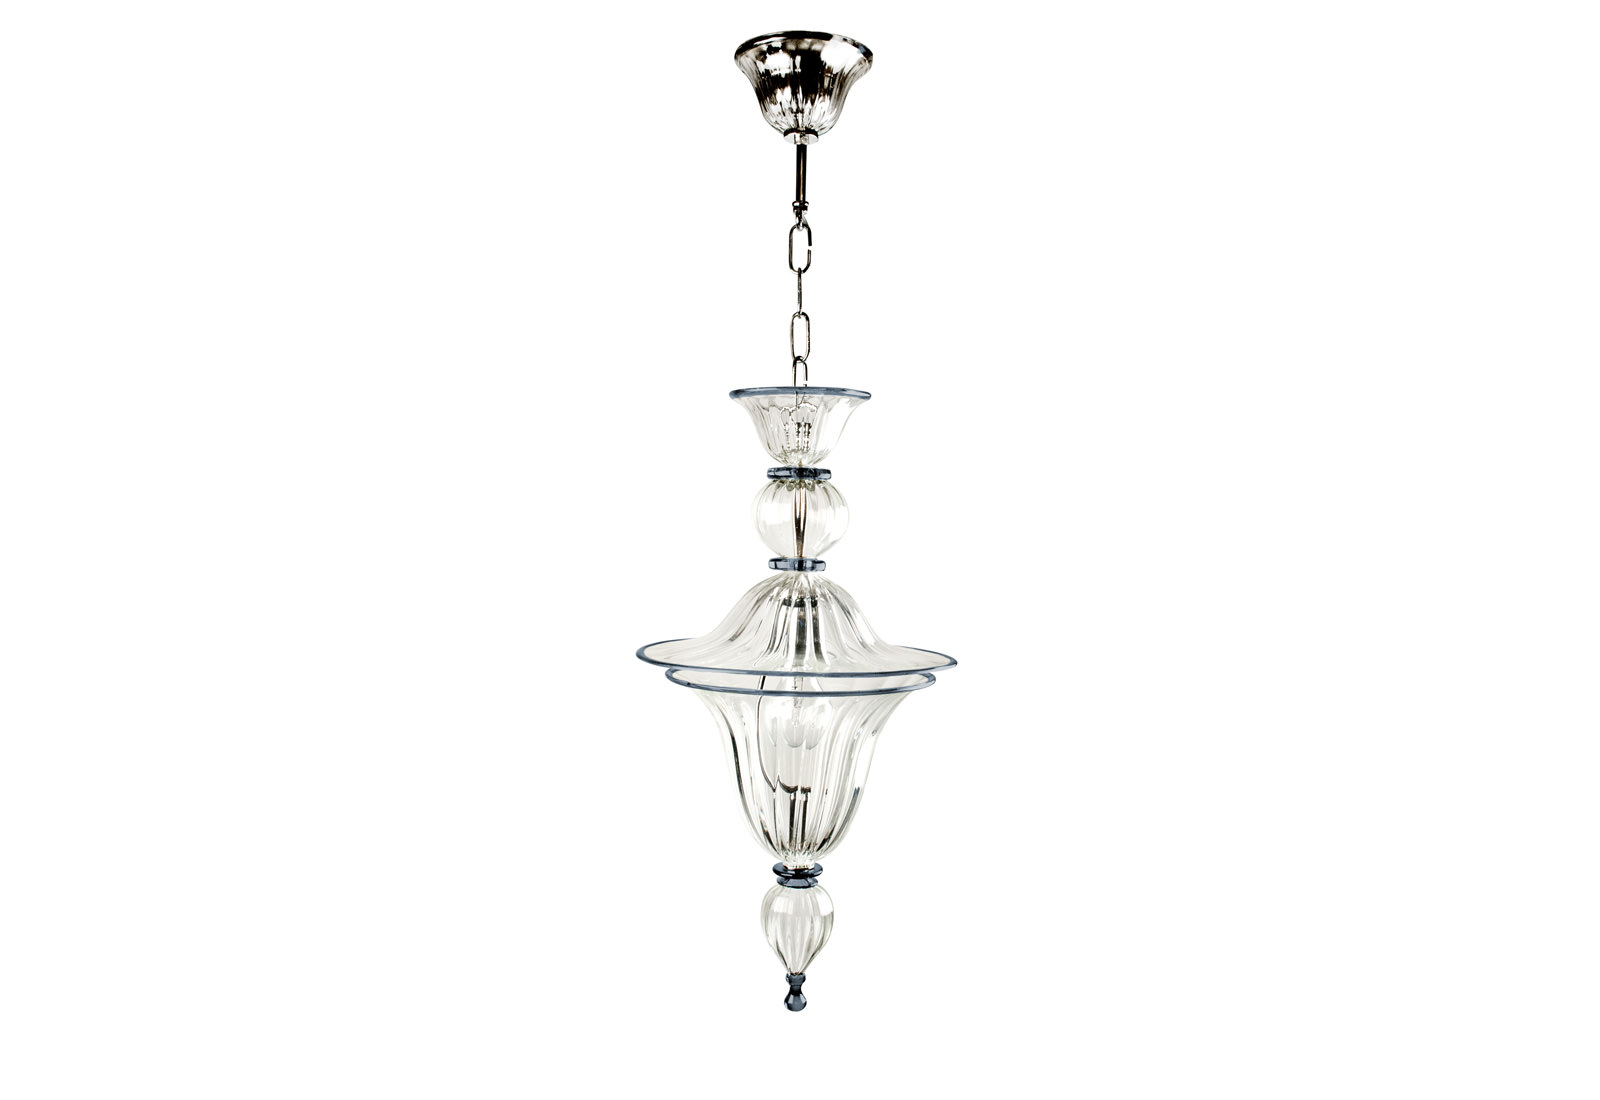 Купить Подвесной светильник Venezia в интернет-магазине roooms.ru